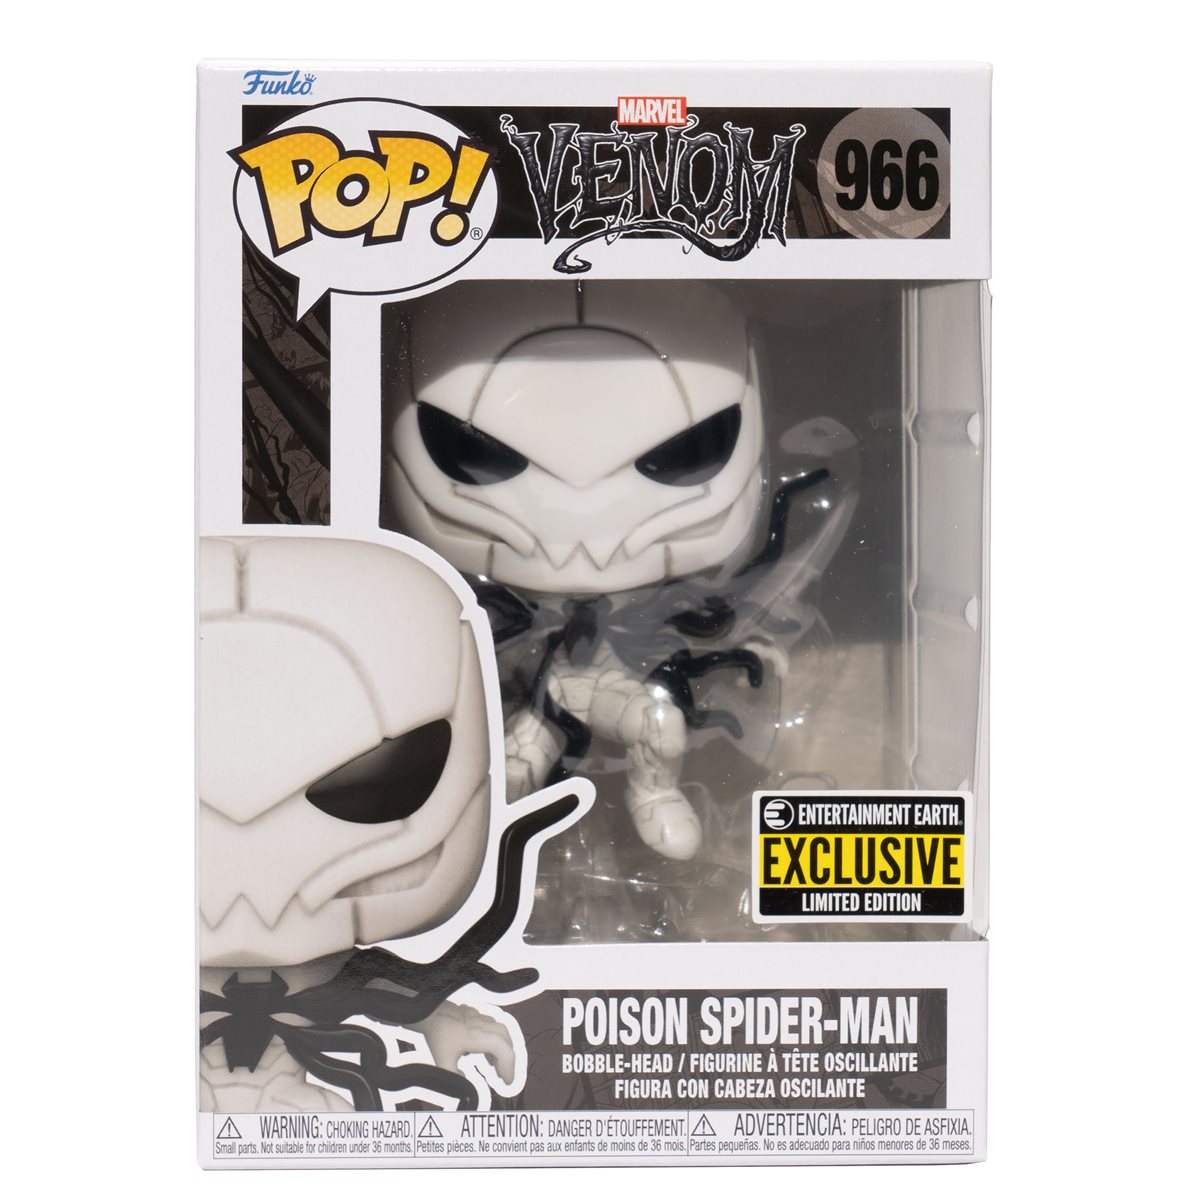 Pop! Marvel 966 Venom: Poison Spider-Man (Glow in The Dark) Exclusive *CHASE*